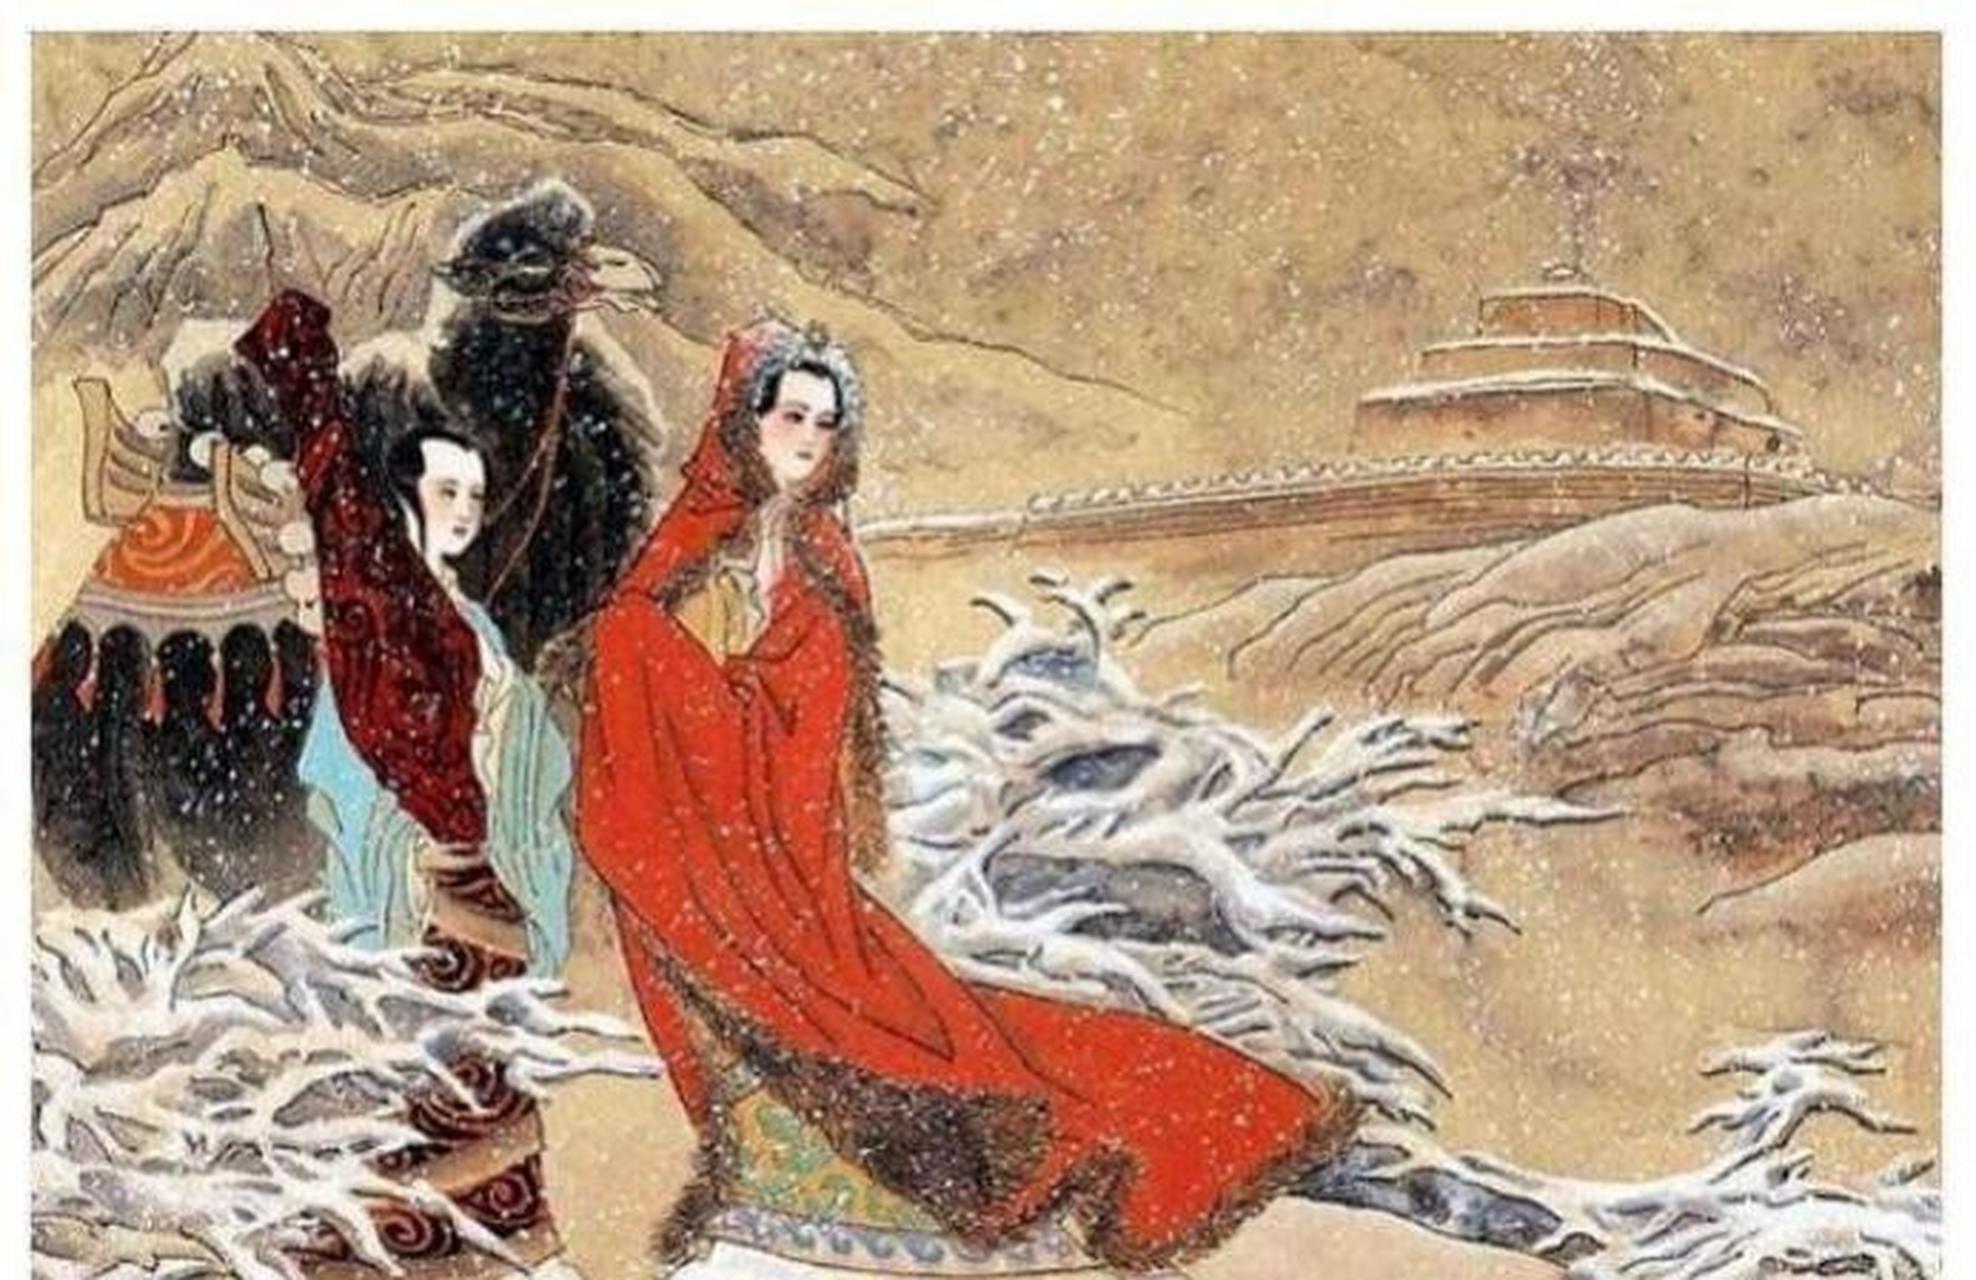 隋朝皇帝将14岁的义成公主嫁给了突厥可汗,当年可汗已经65岁